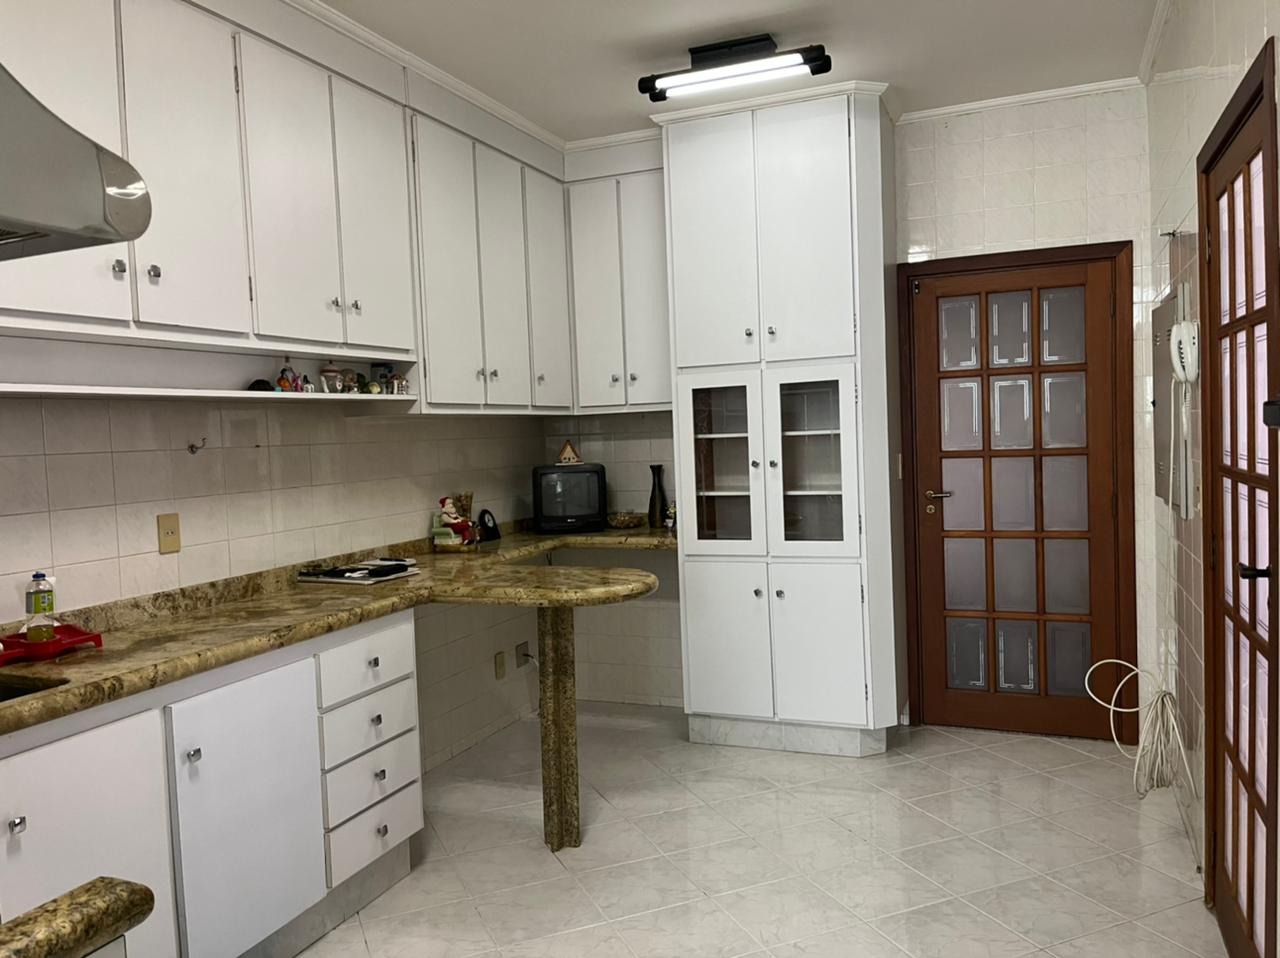 Apartamento à venda, 3 quartos, 1 suíte, 1 vaga, no bairro Cidade Alta em Piracicaba - SP